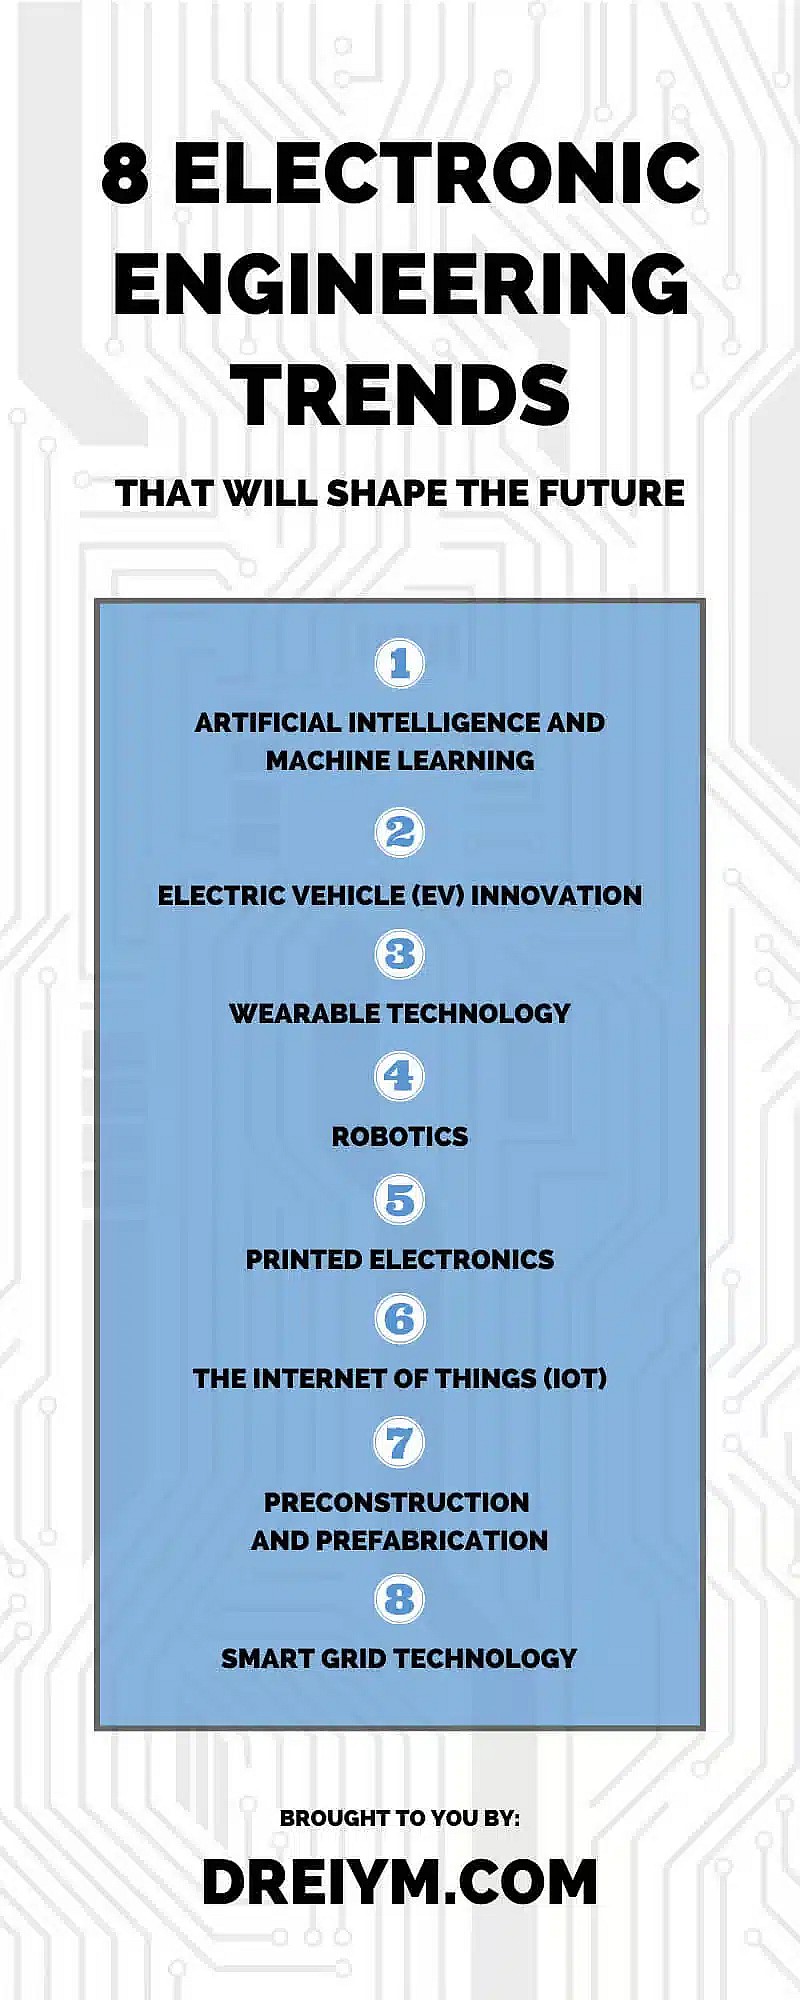 8 tendencias en ingeniería electrónica que marcarán el futuro